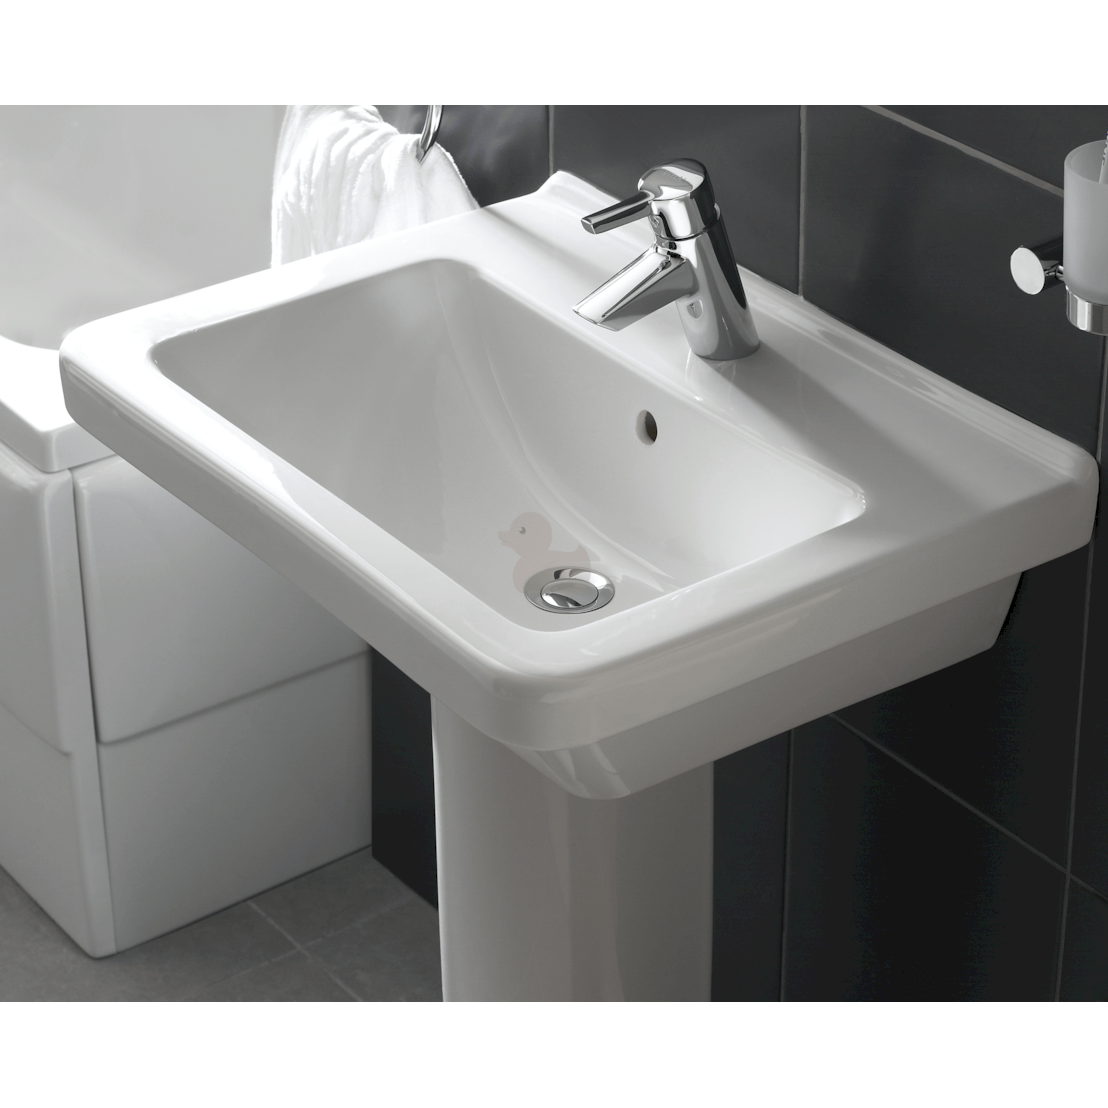 Umivalniki 5311-003-0001 Vitra S50 65 x 48,5 cm keramični umivalnik z odprtino za armaturo | KOPALNICA-ONLINE.SI